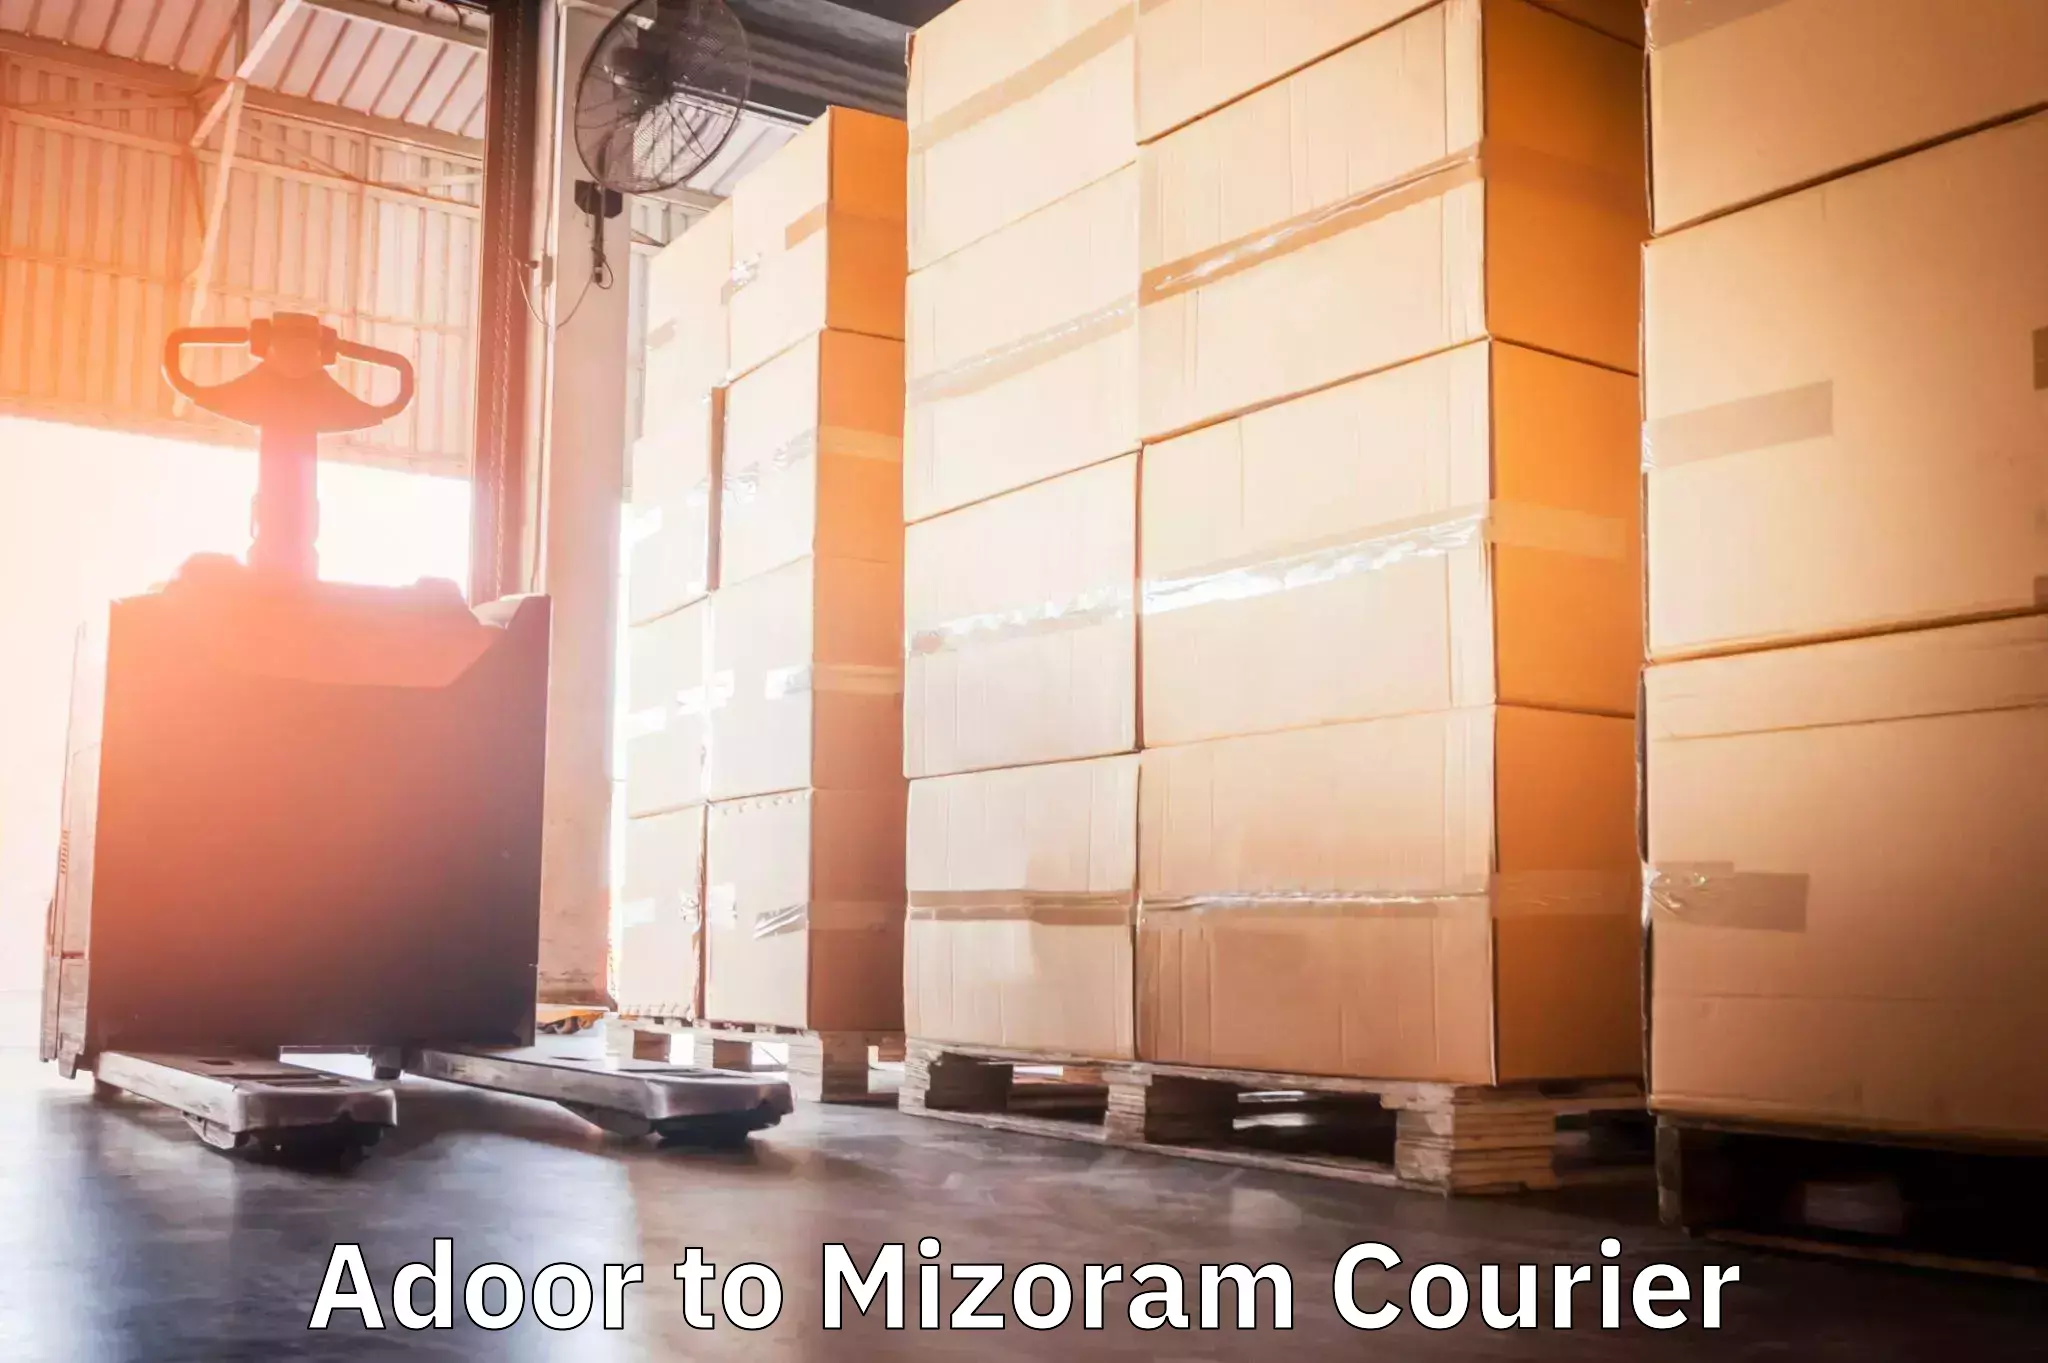 Sustainable courier practices Adoor to Mizoram